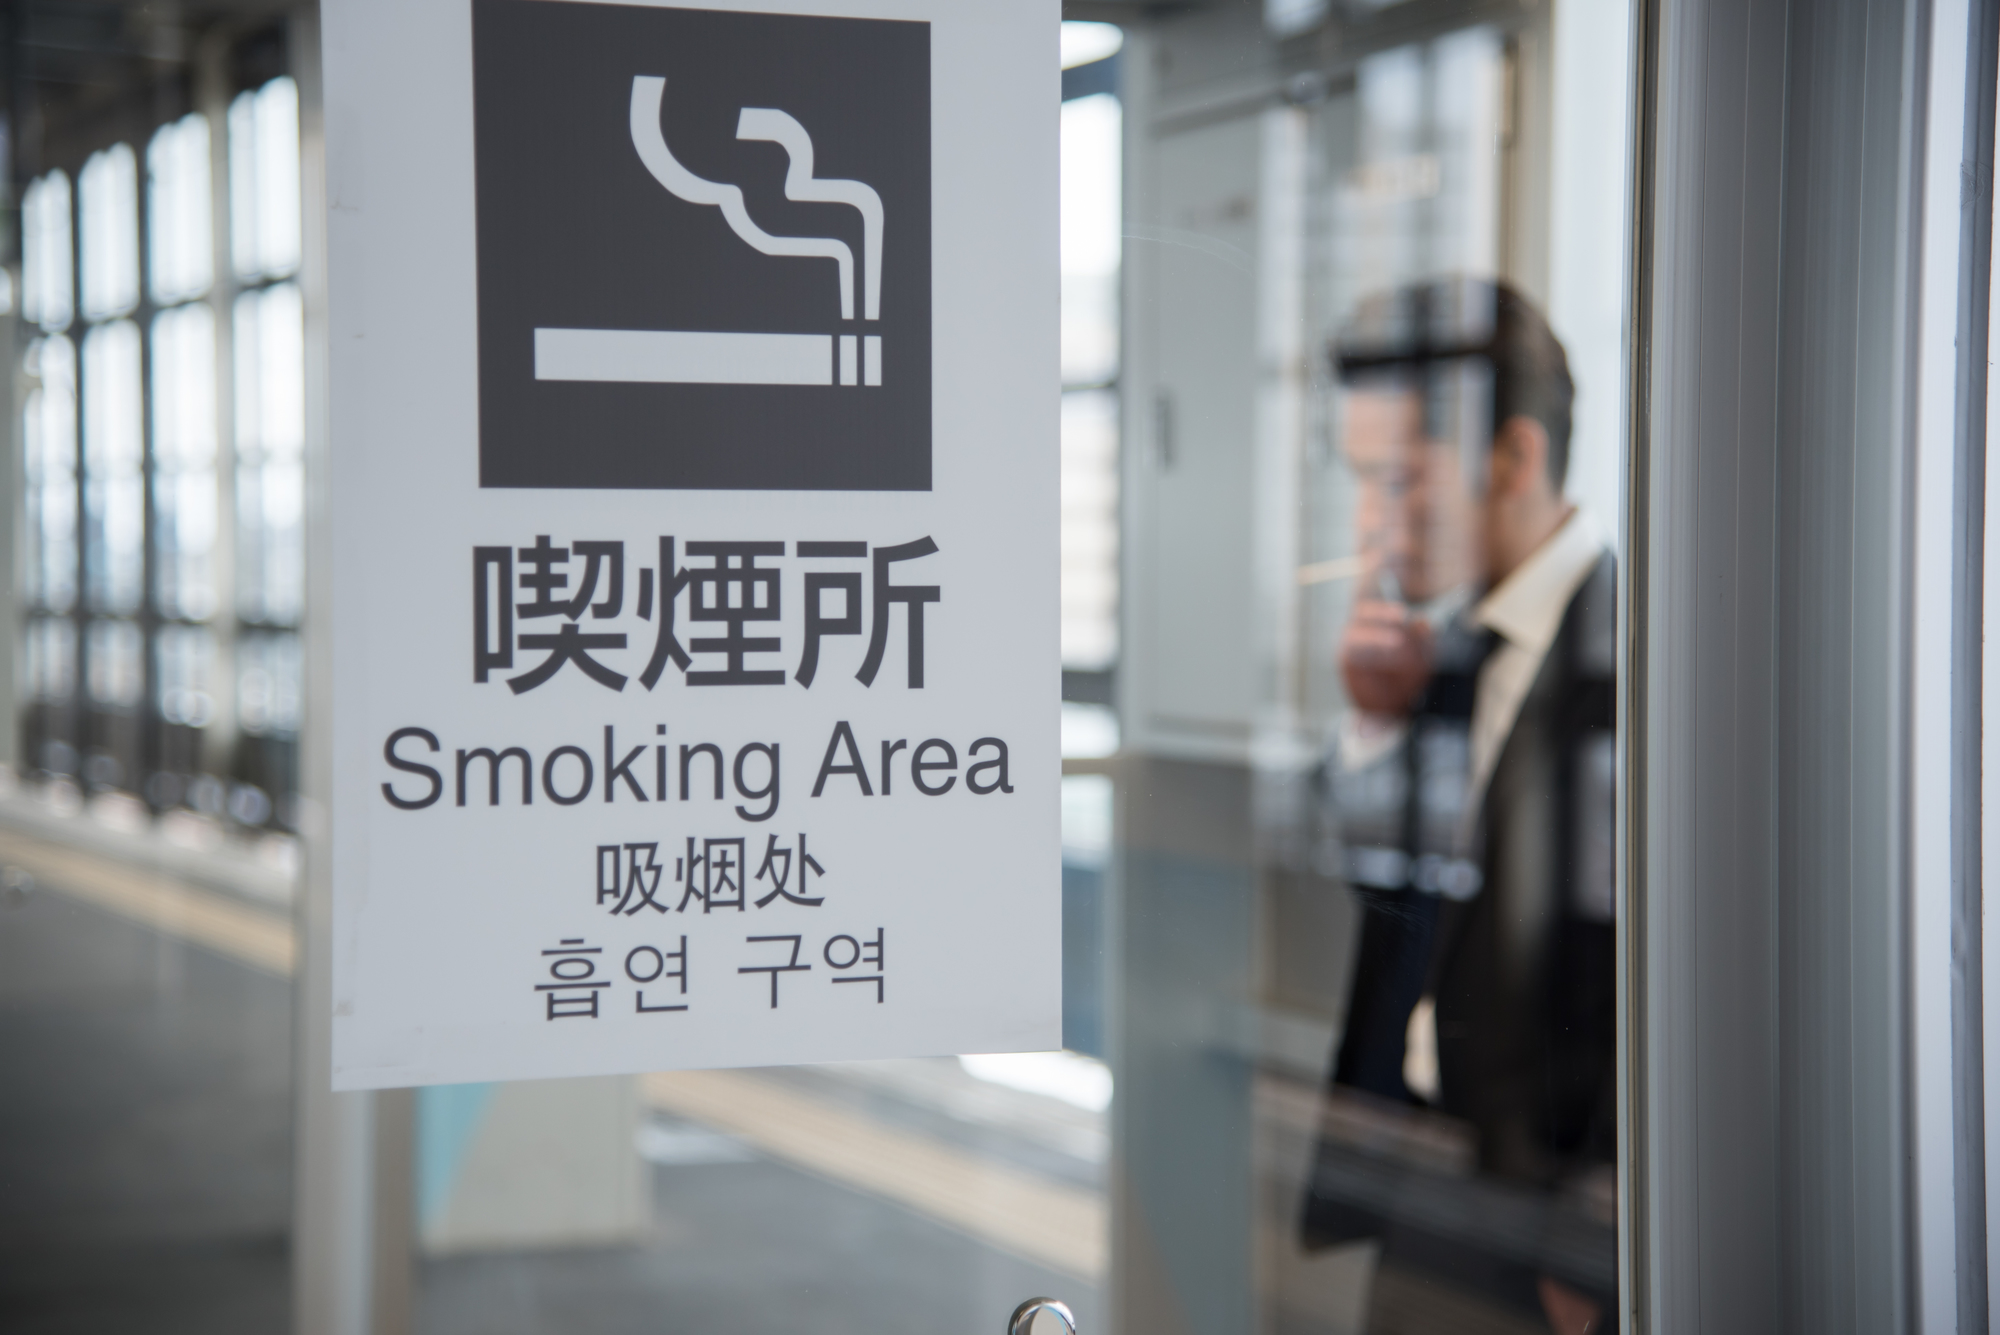 ここまで進んでいる最新の喫煙所事情 喫煙所設備の選び方 コラム エルゴジャパン